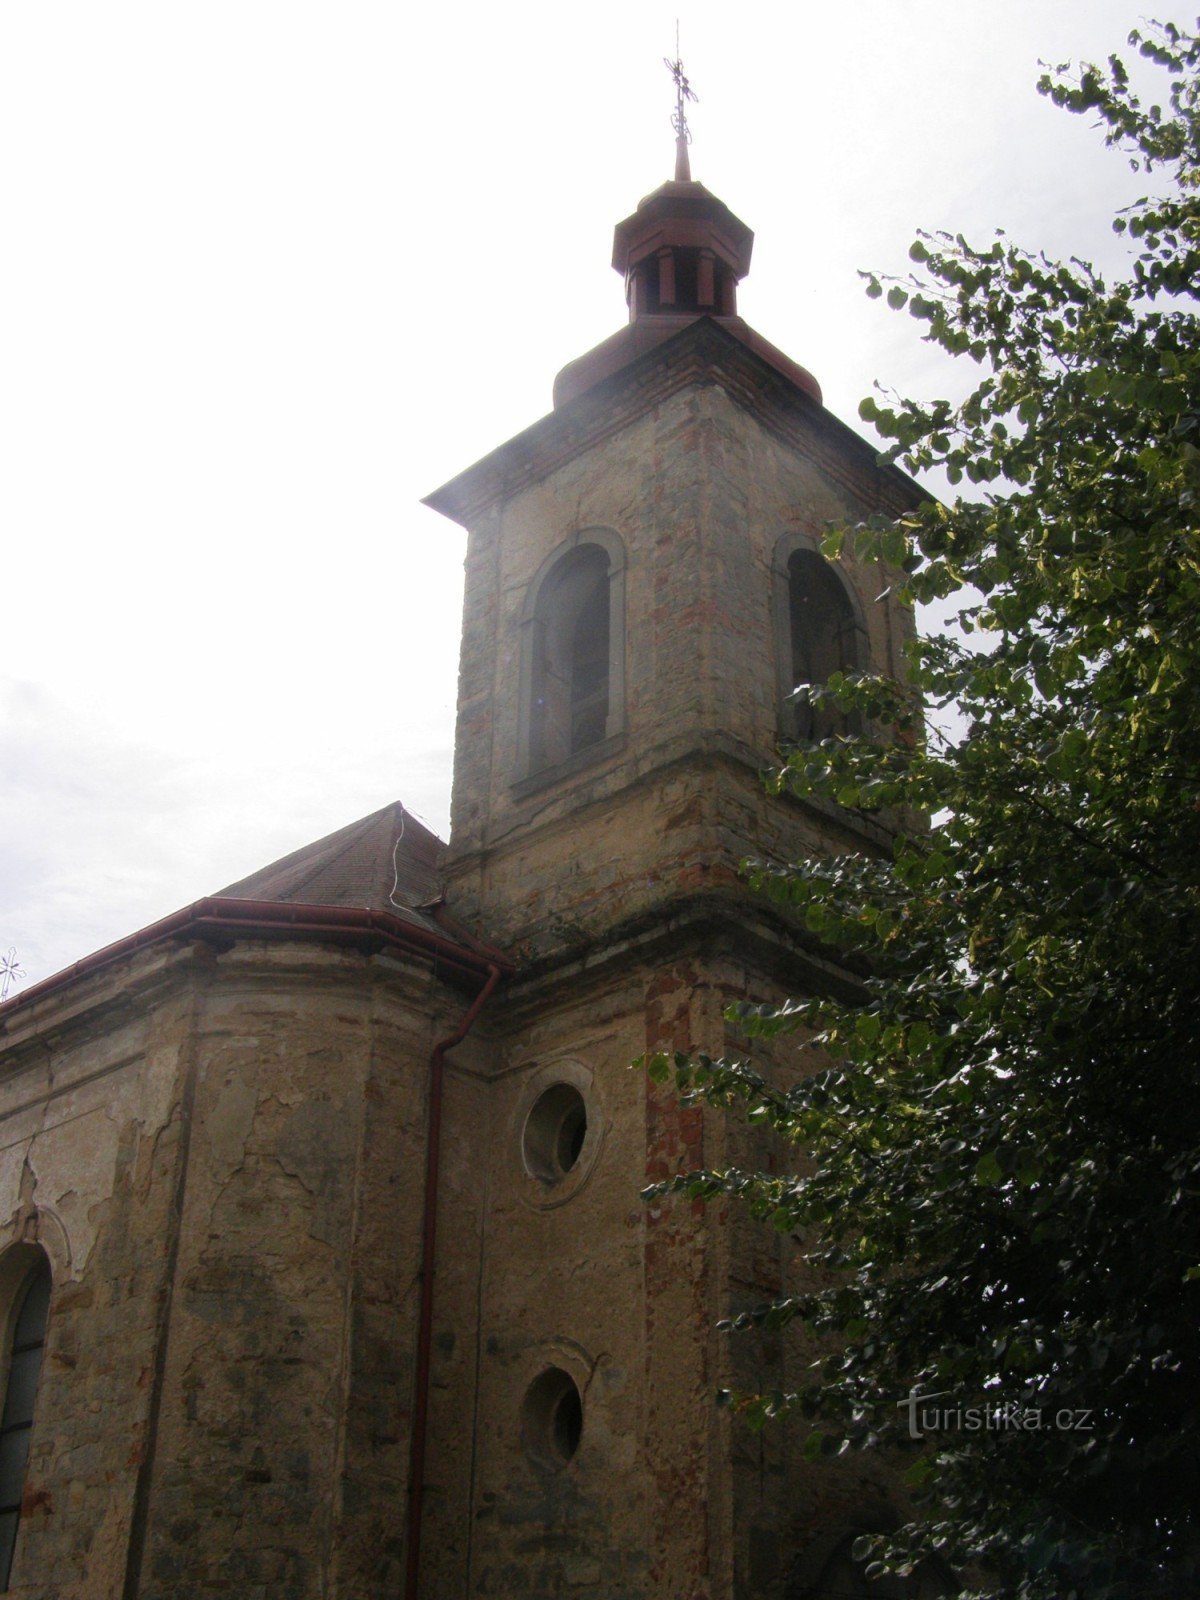 Dolany (JC) - Church of St. Matthew